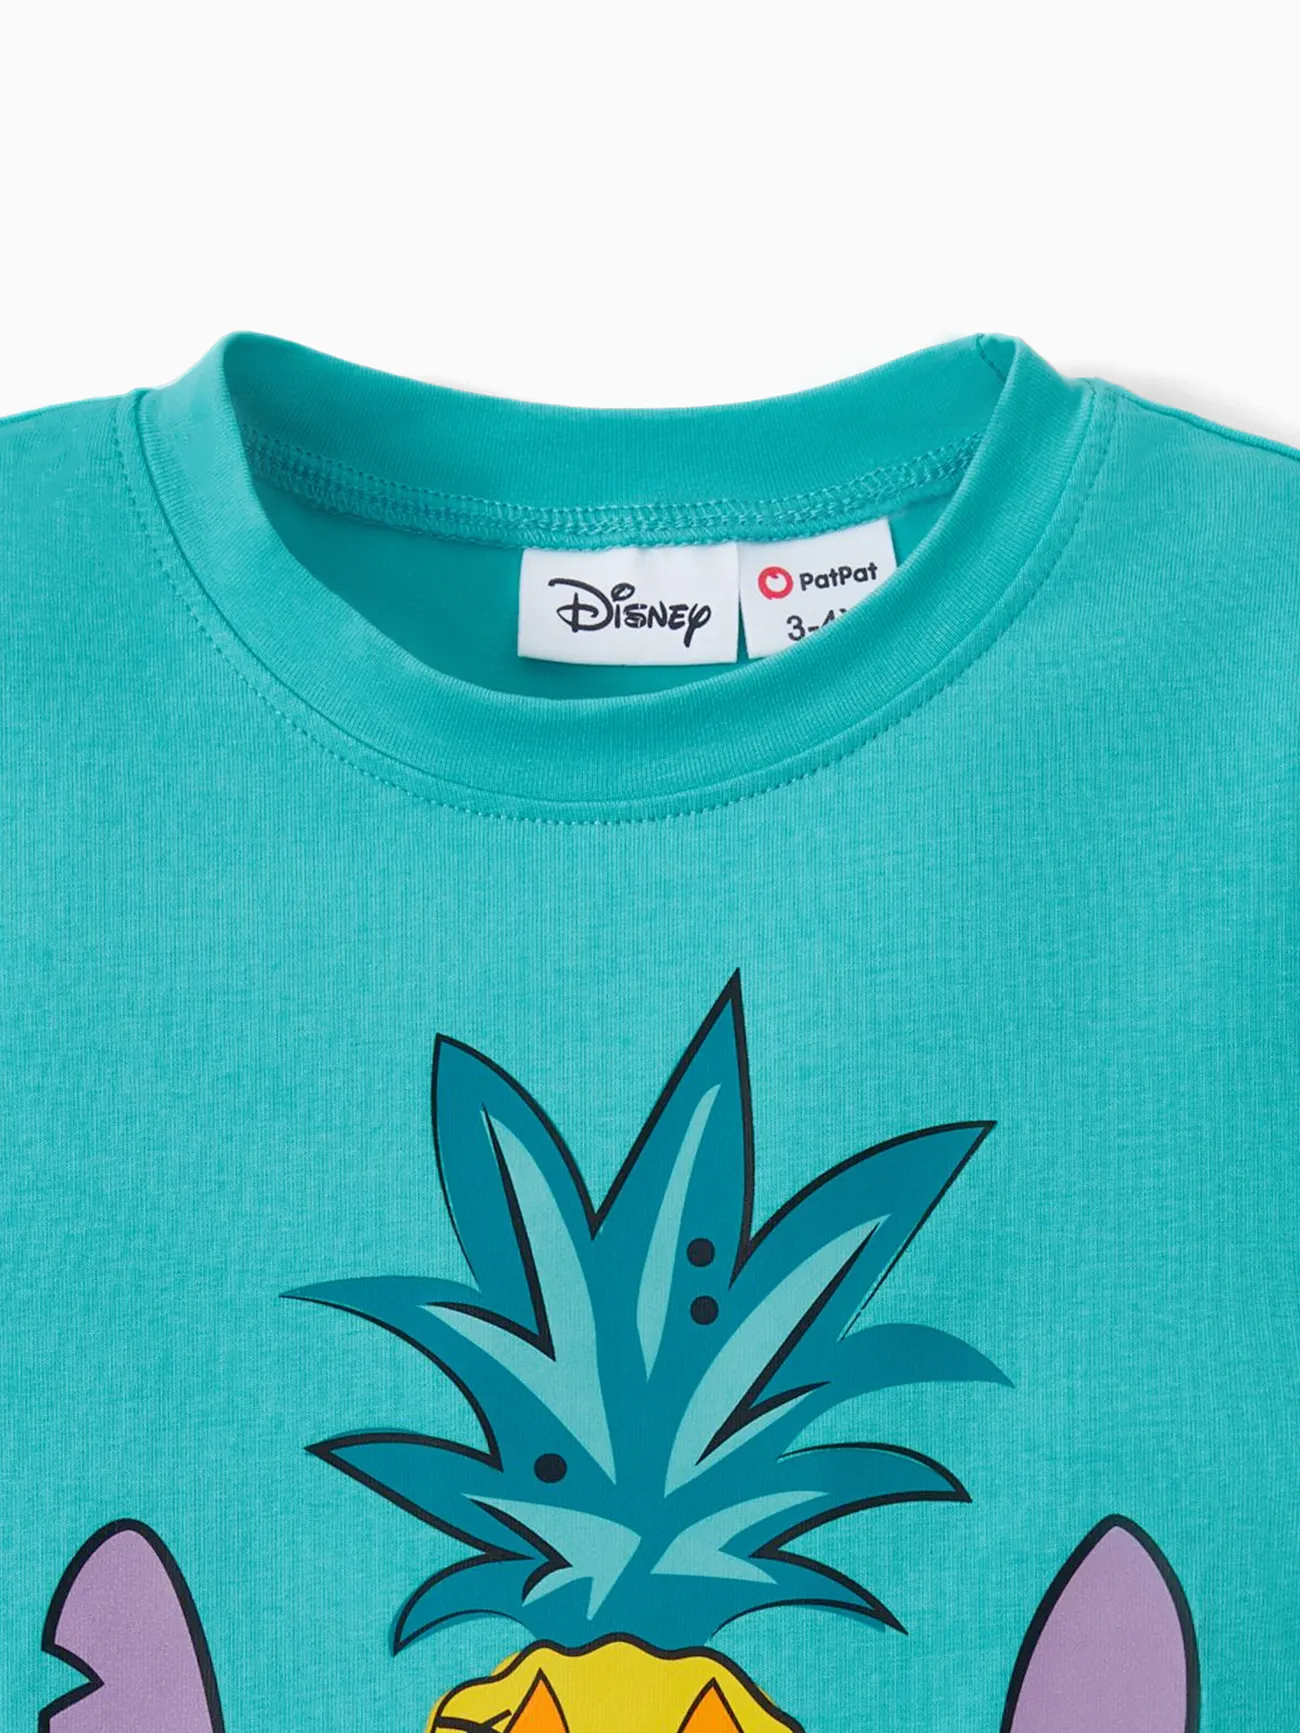 迪士尼針跡 全家裝 熱帶植物花卉 背心 親子裝 套裝 綠色 big image 1